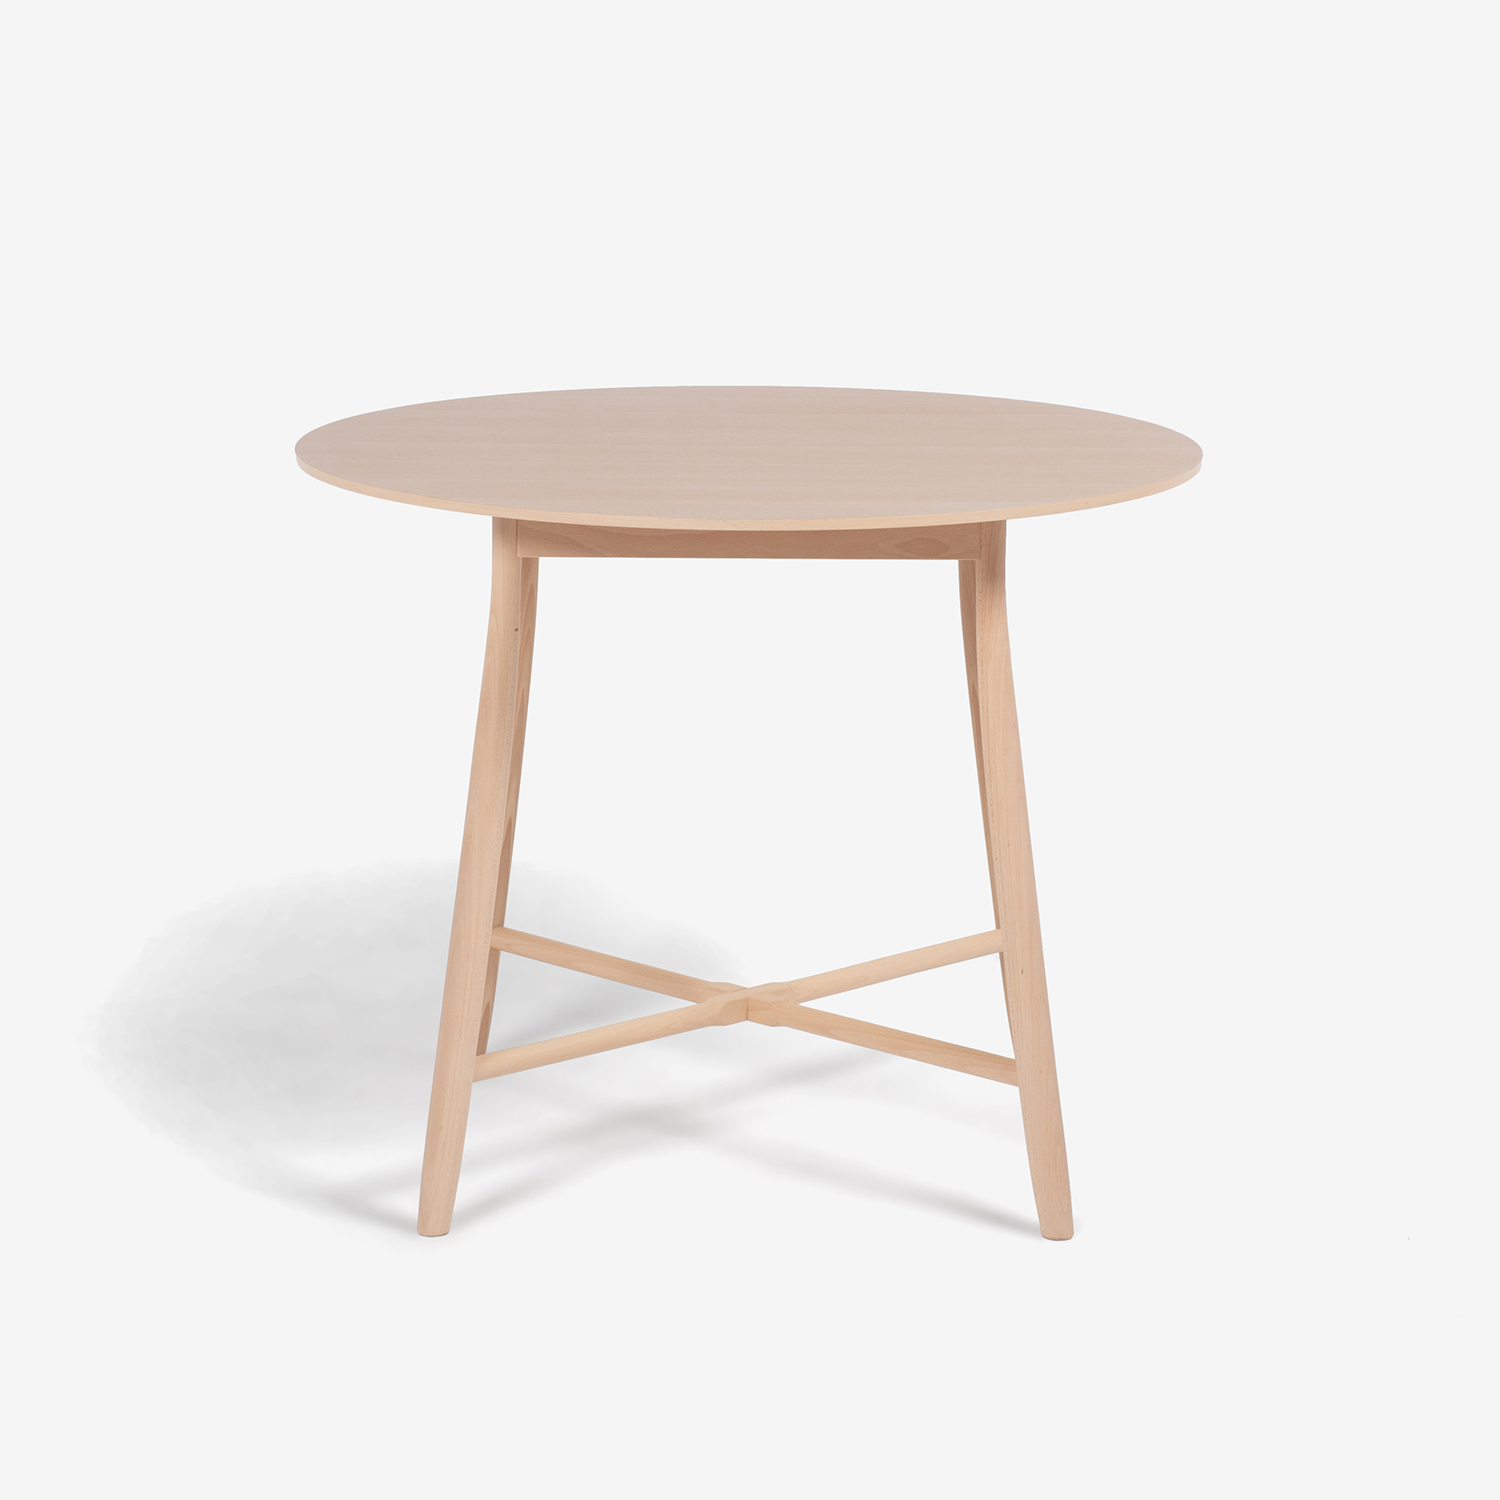 秋田木工 ダイニングテーブル「209EB」ブナ材 白木塗装【決算セールのため30%OFF】